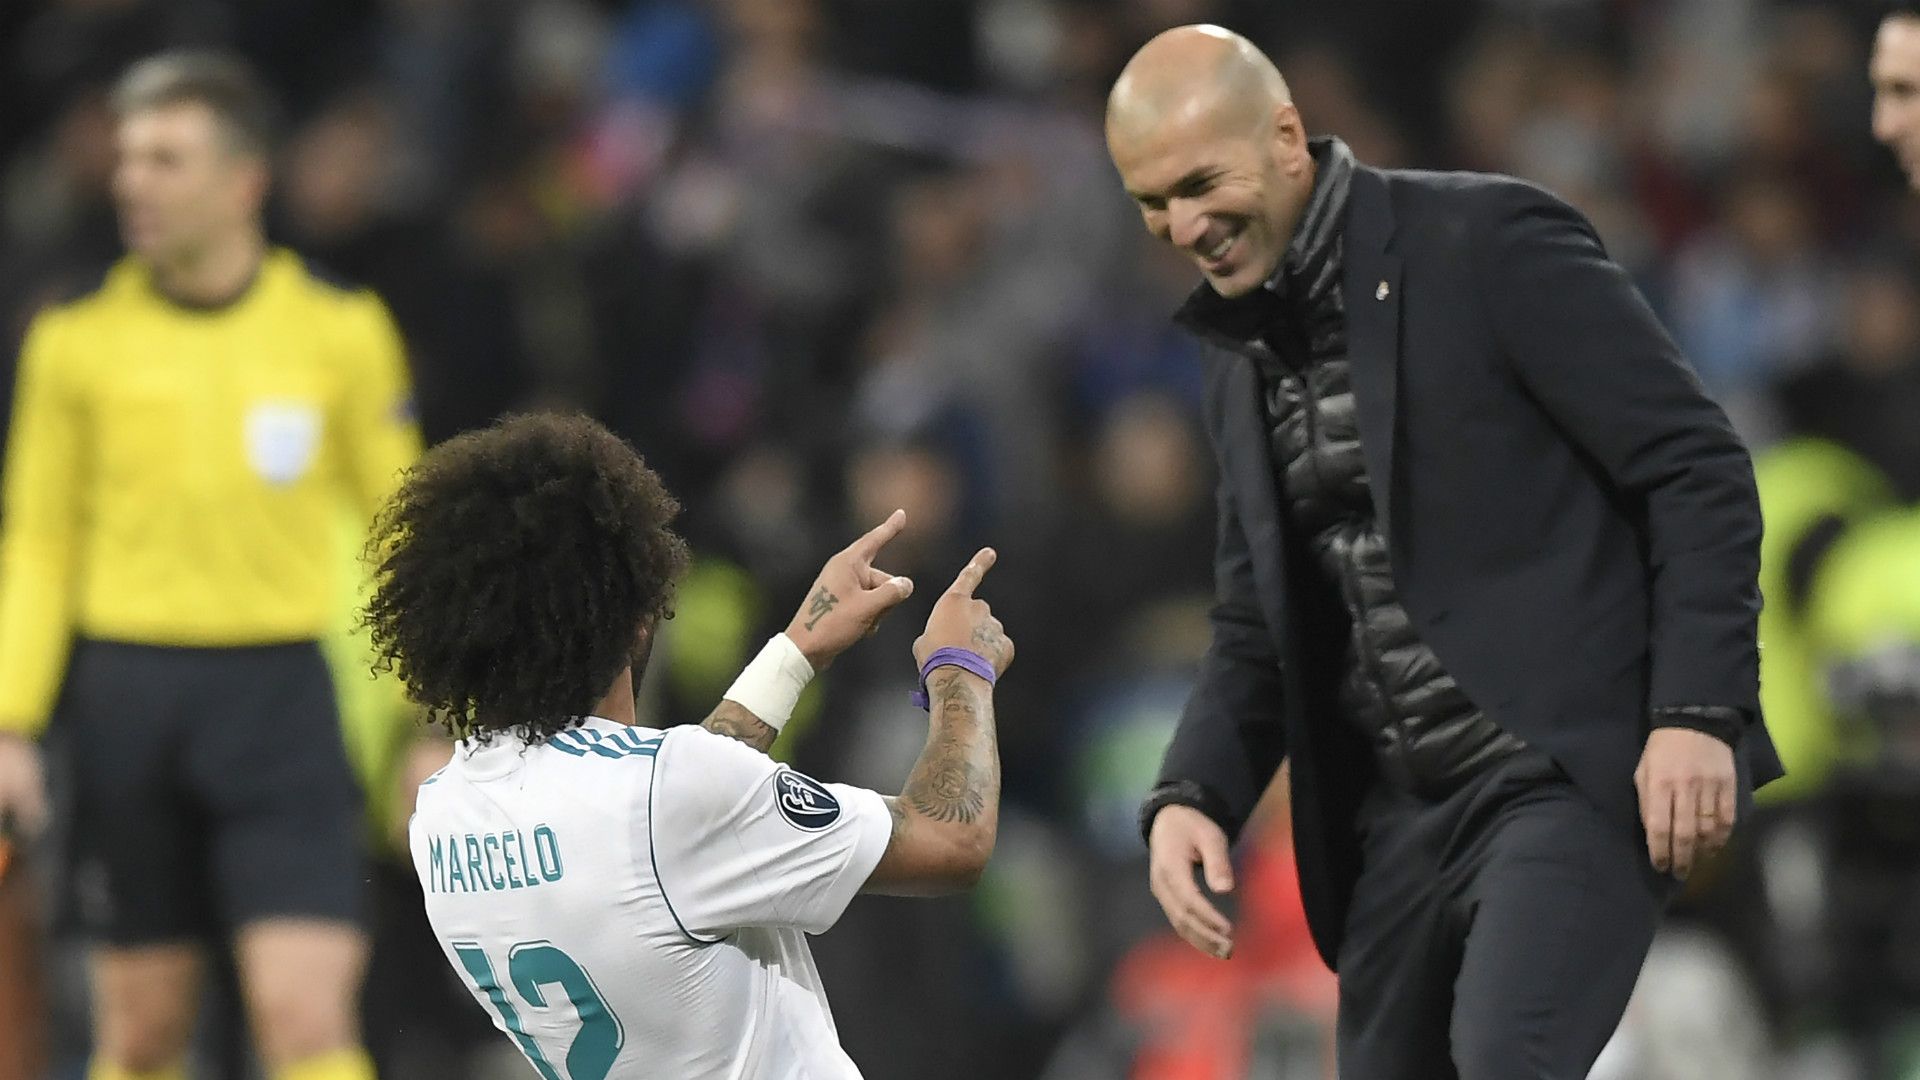 Ronaldo Marcelo And Zidane